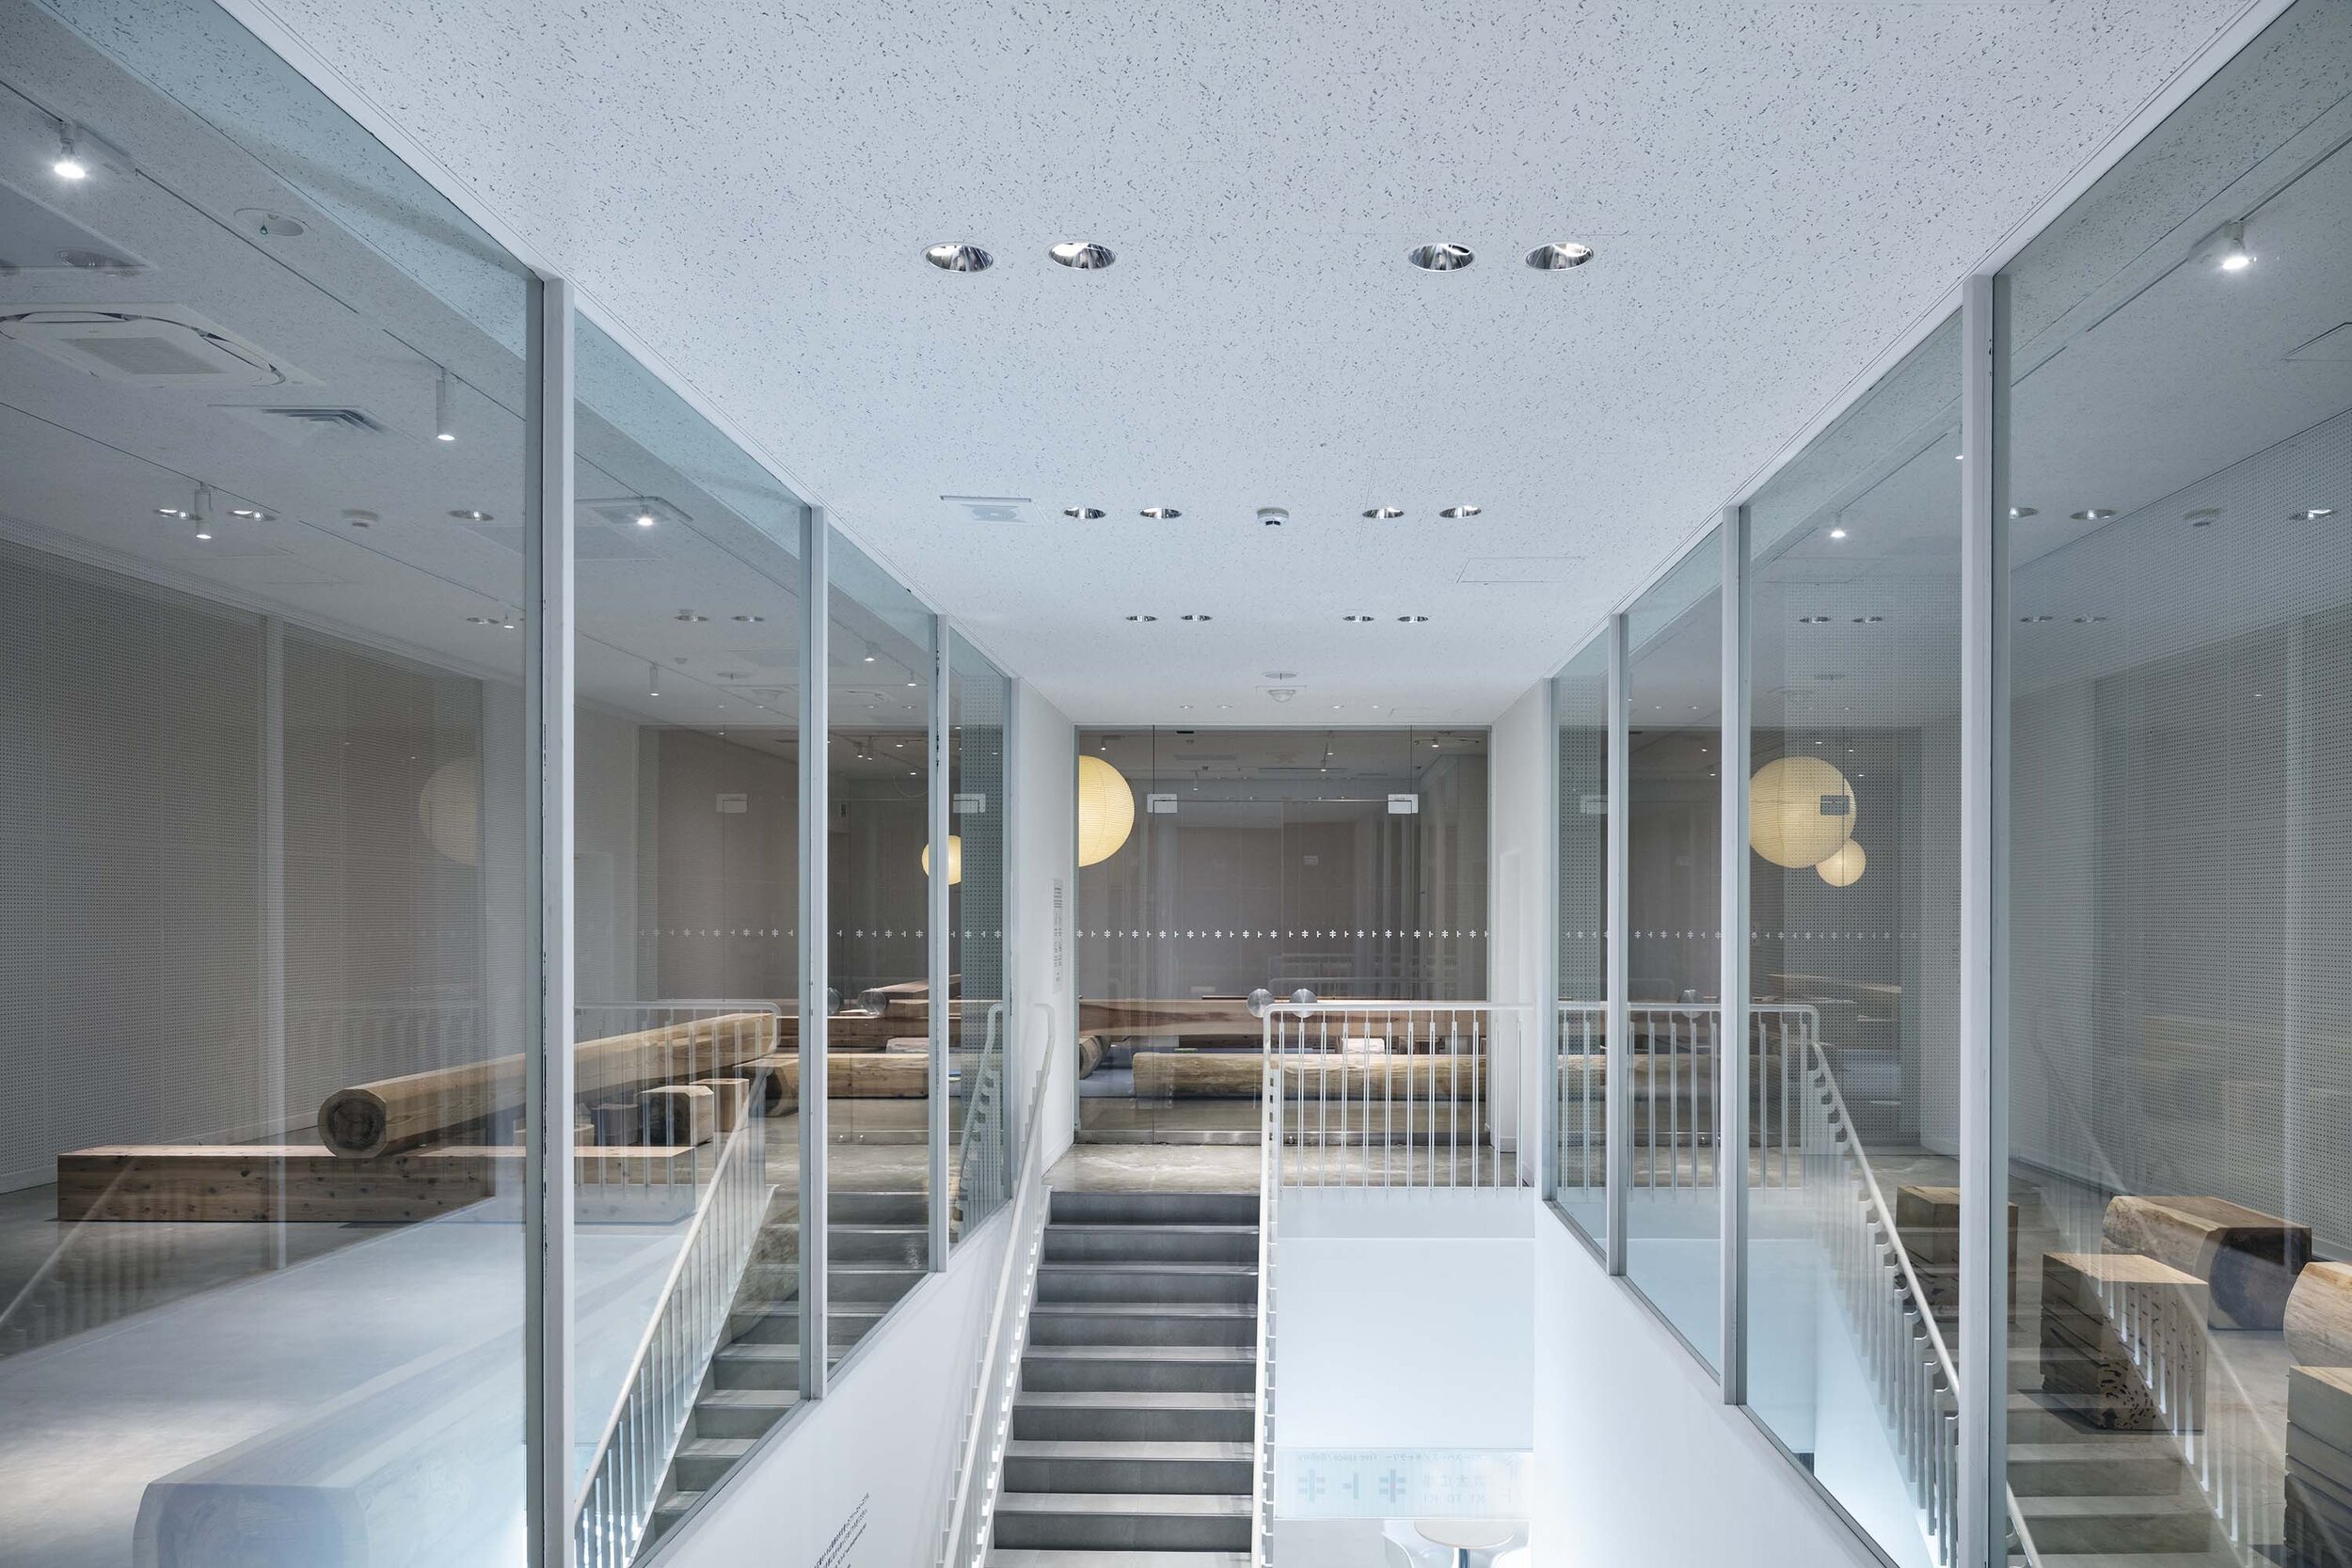  トラフ建築設計事務所 Torafu Architectsの鈴野浩一と禿真哉がインテリアデザインを手掛けた「丸太広場キトキ」の階段まわり 